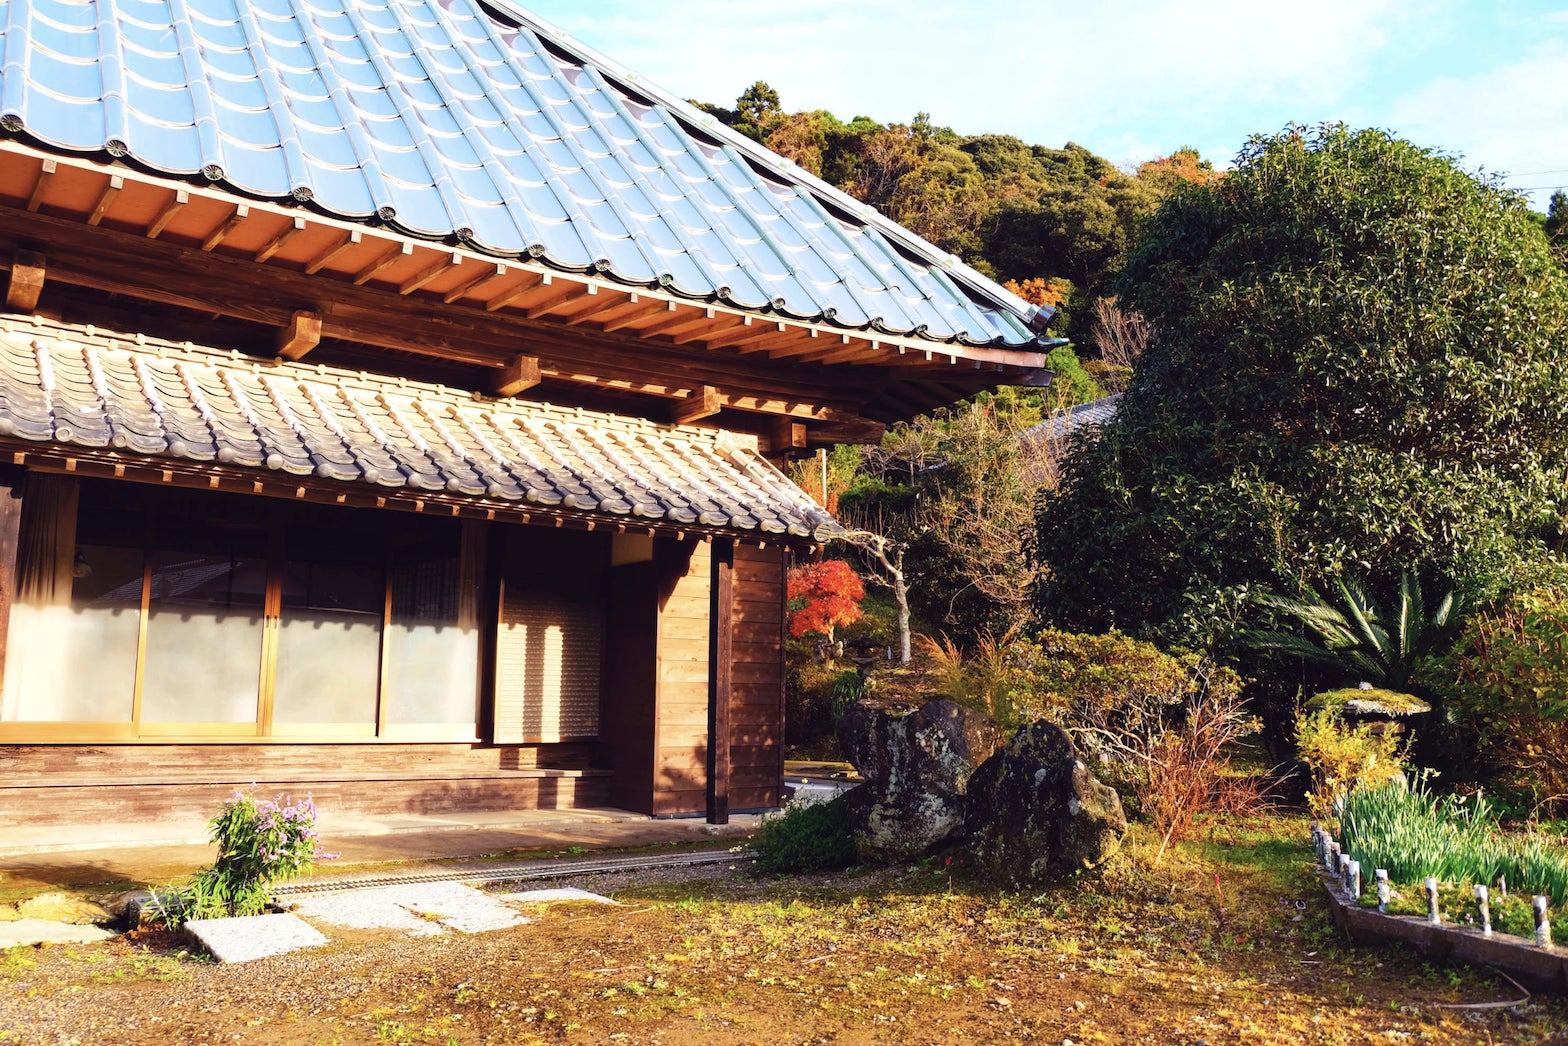 千葉県いすみ市に、築200年の古民家貸切オーベルジュ 「季舟庵」4月27日(木)誕生